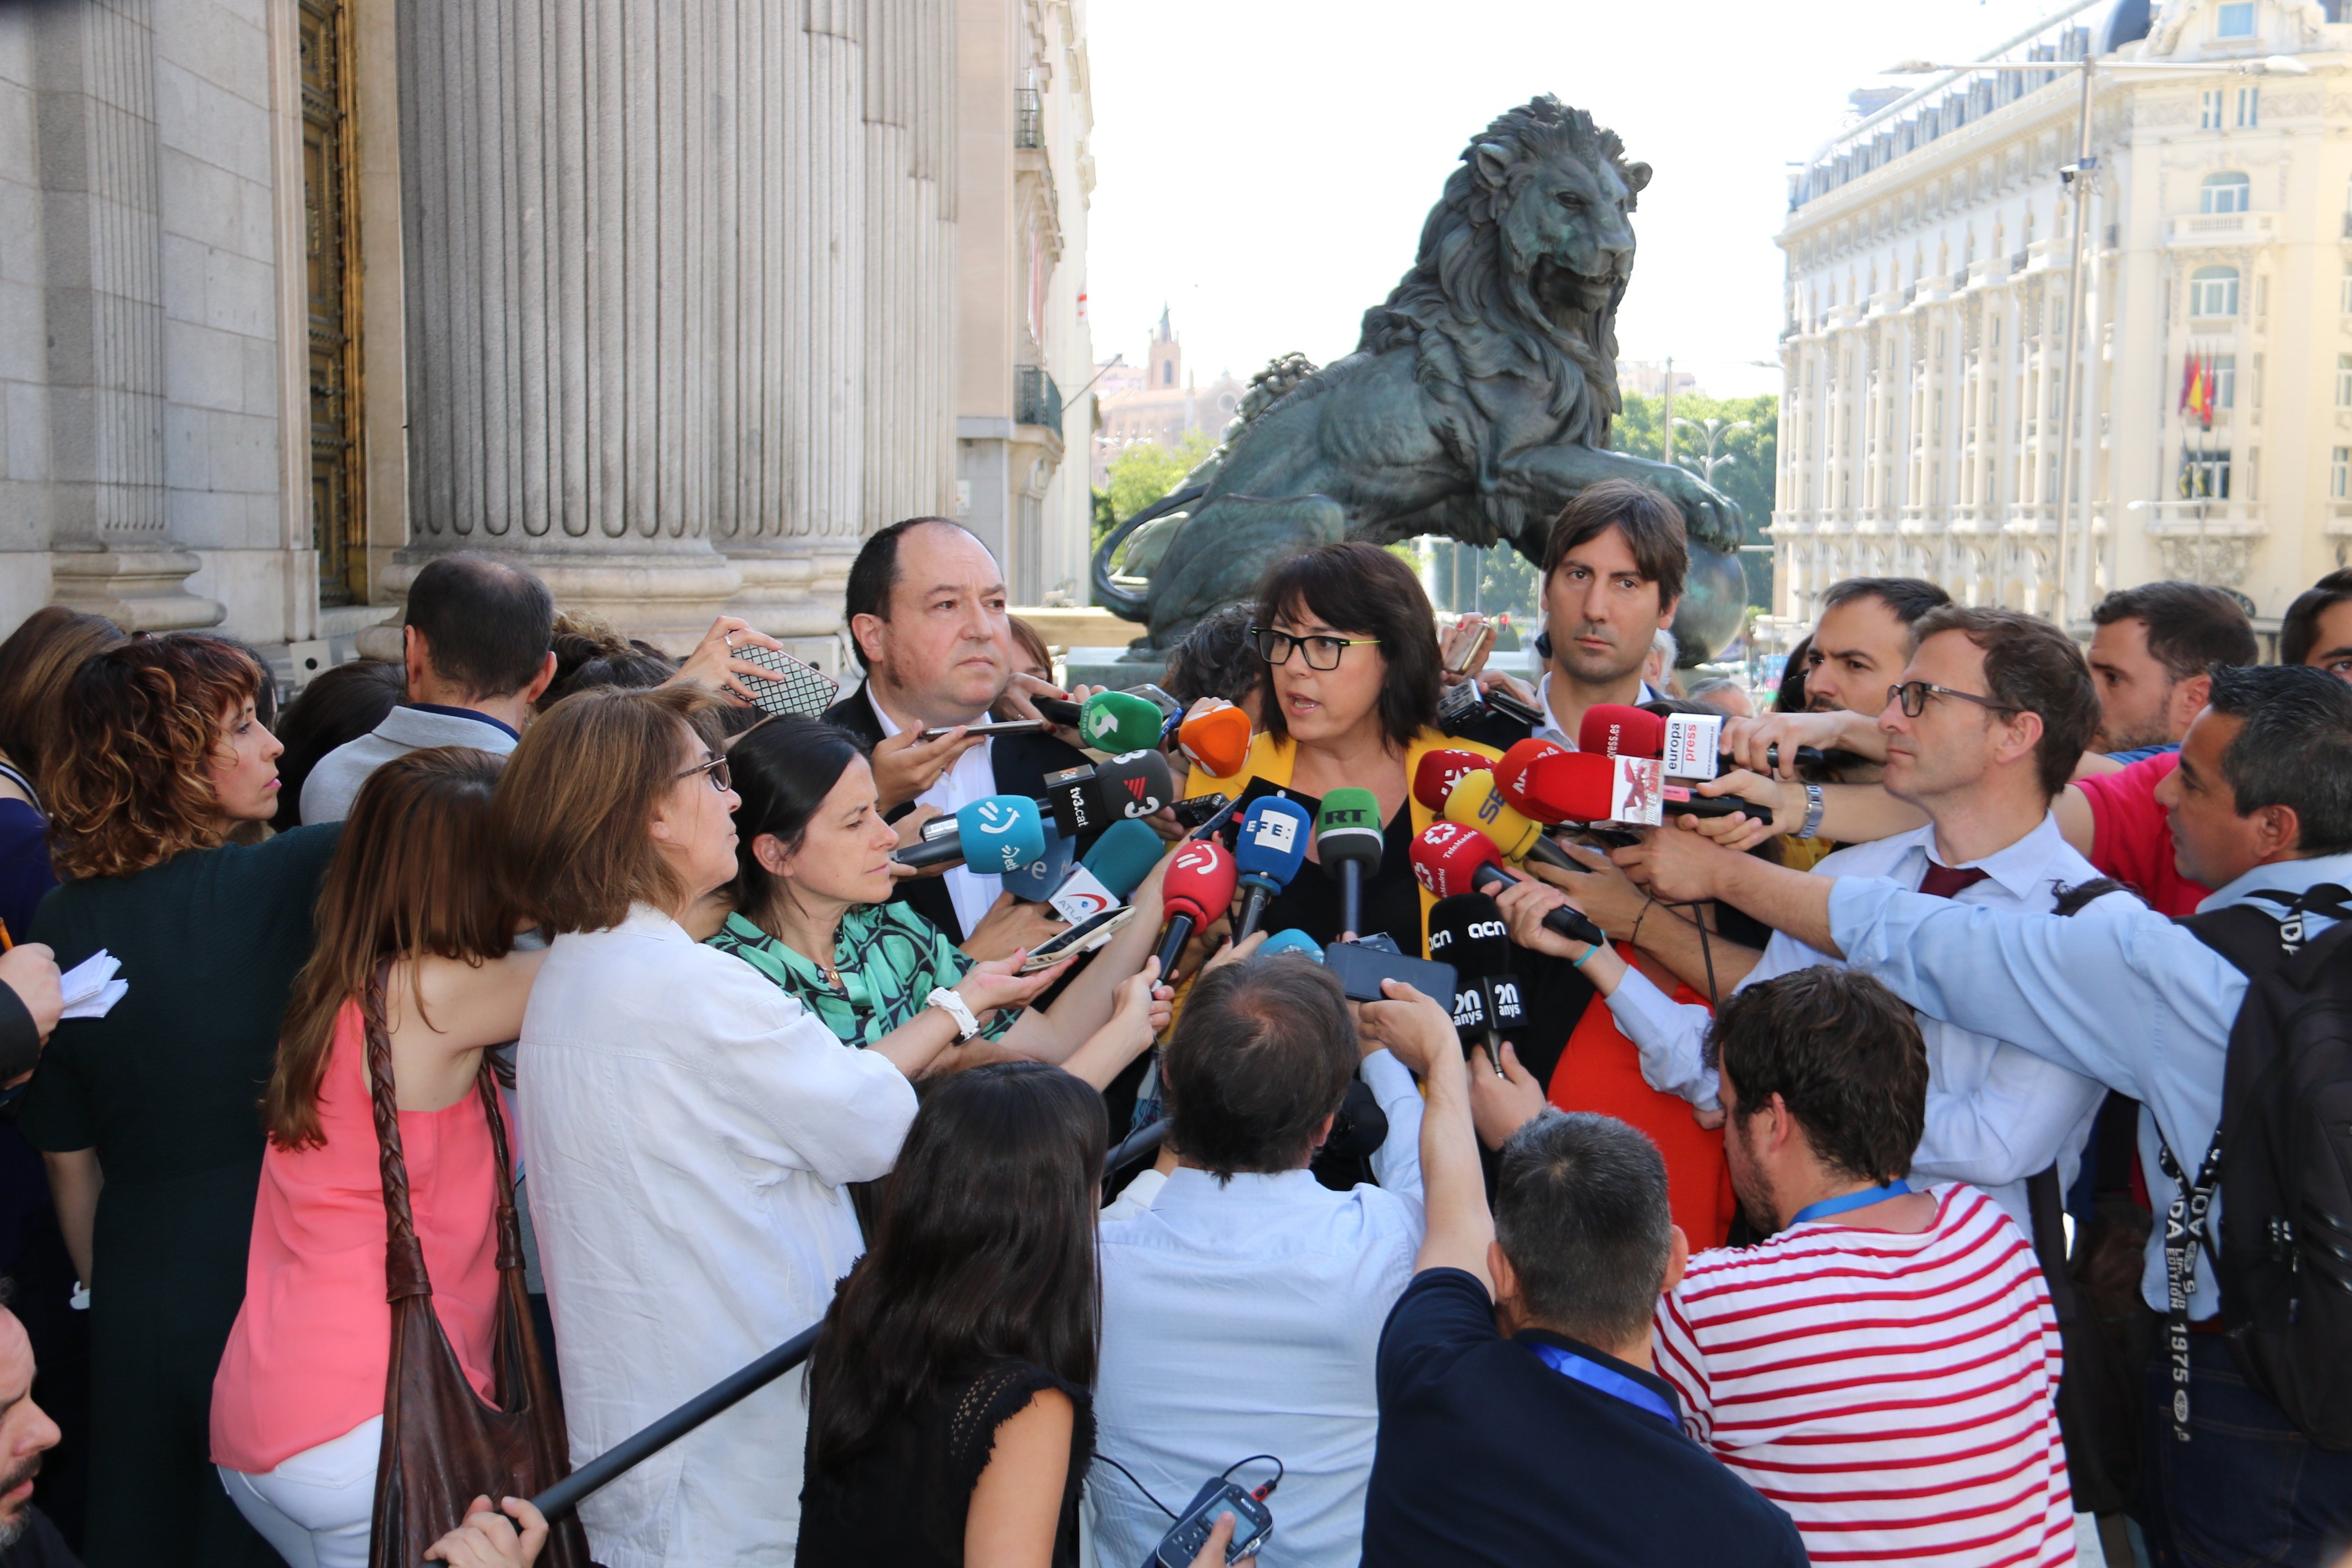 Riba denuncia el veto a Junqueras: "Lo llevaremos a las altas instancias europeas"